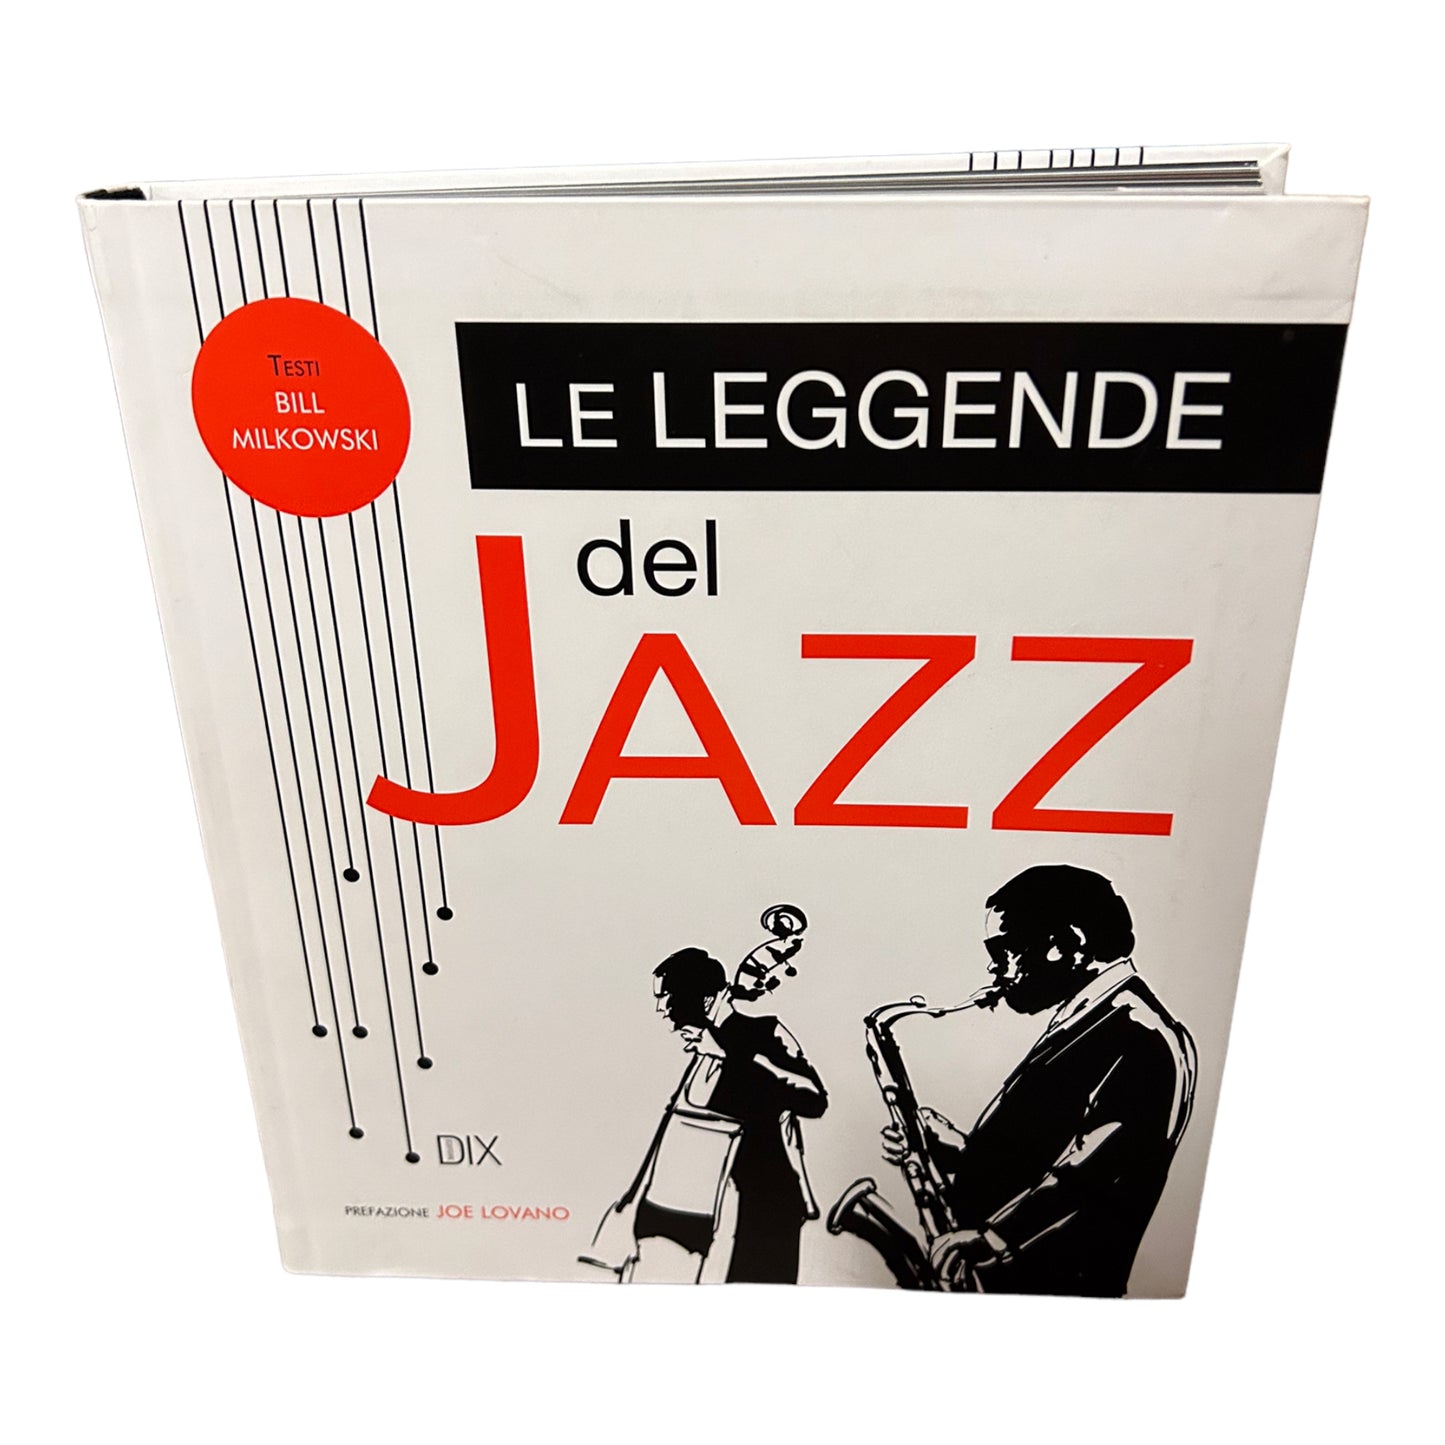 Le leggende del jazz